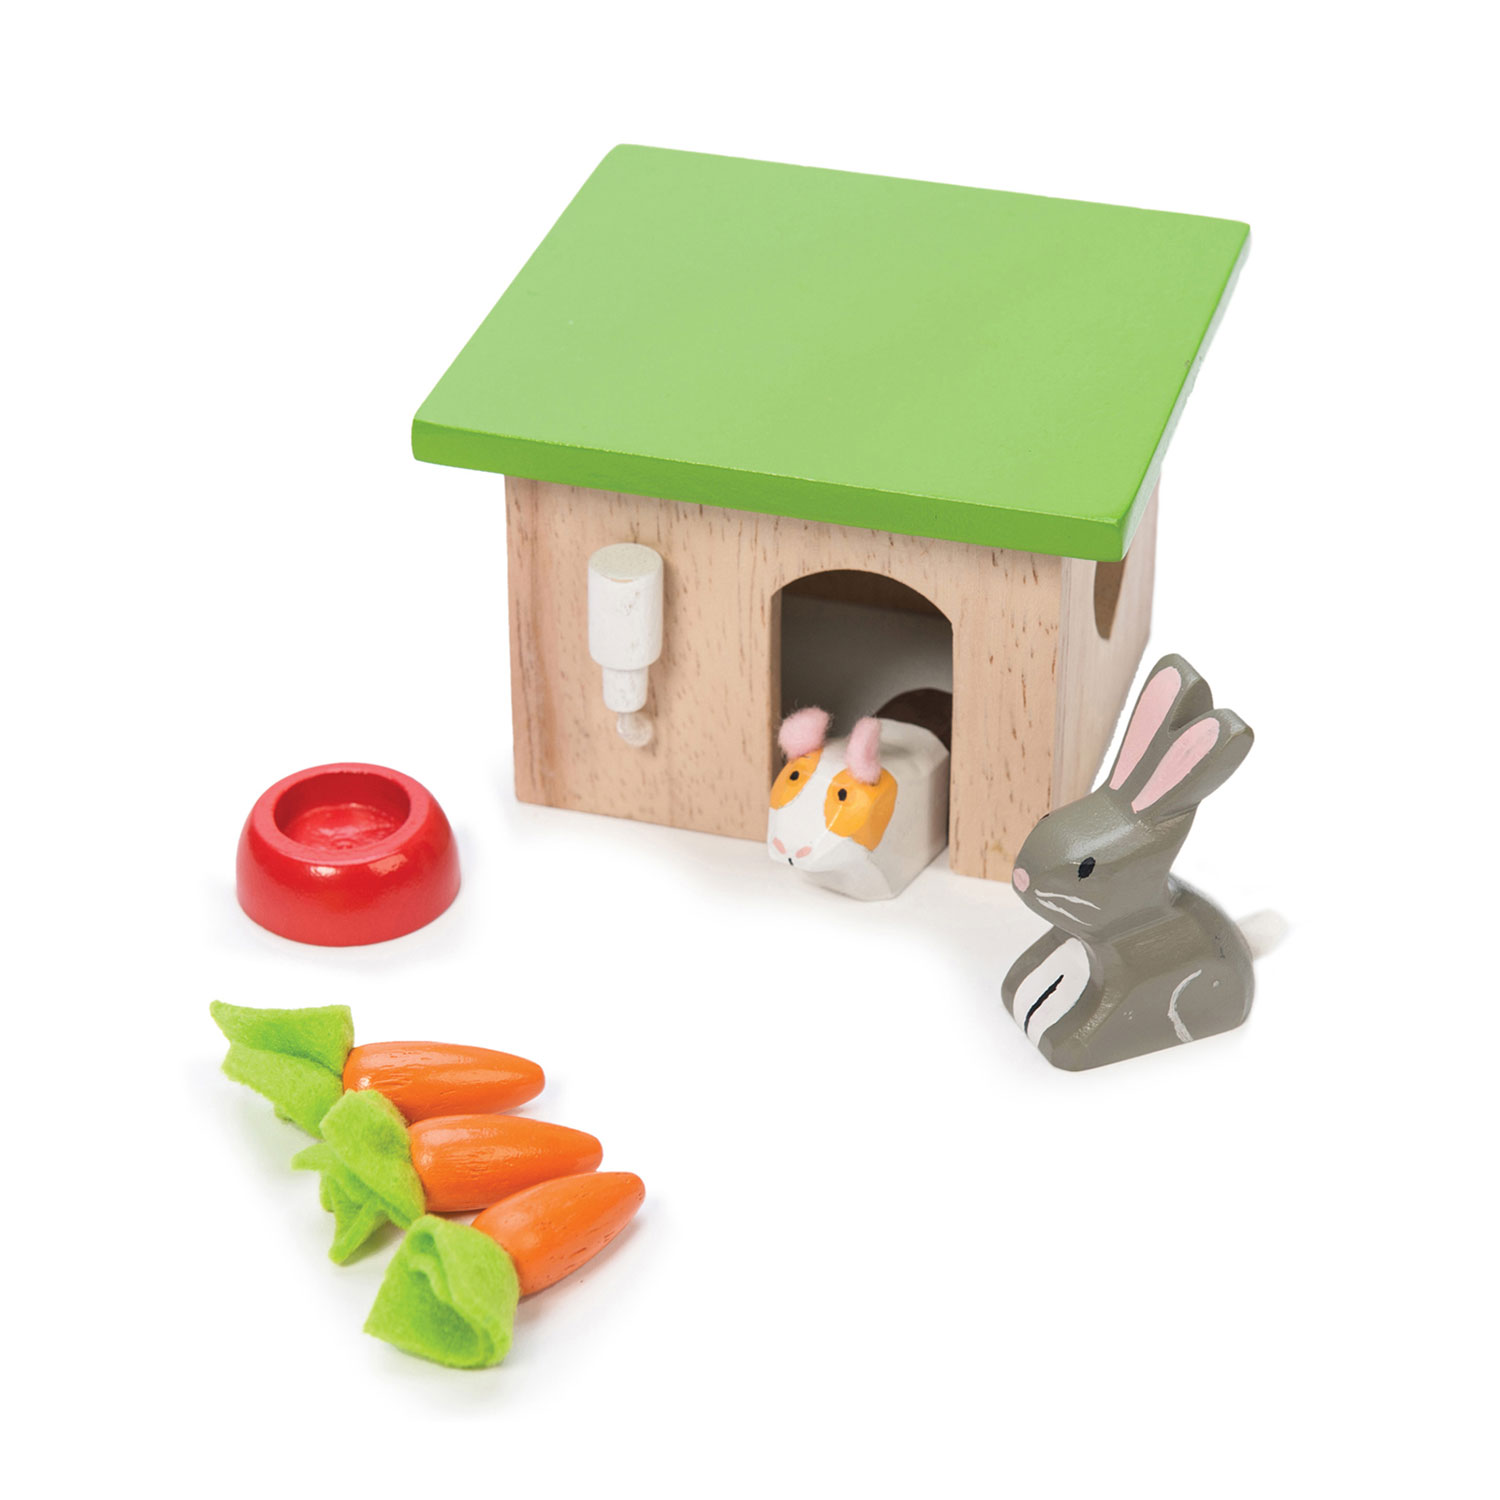 Hase & Meerschweinchen / Bunny & Guinea Pet Animal Set - 2022